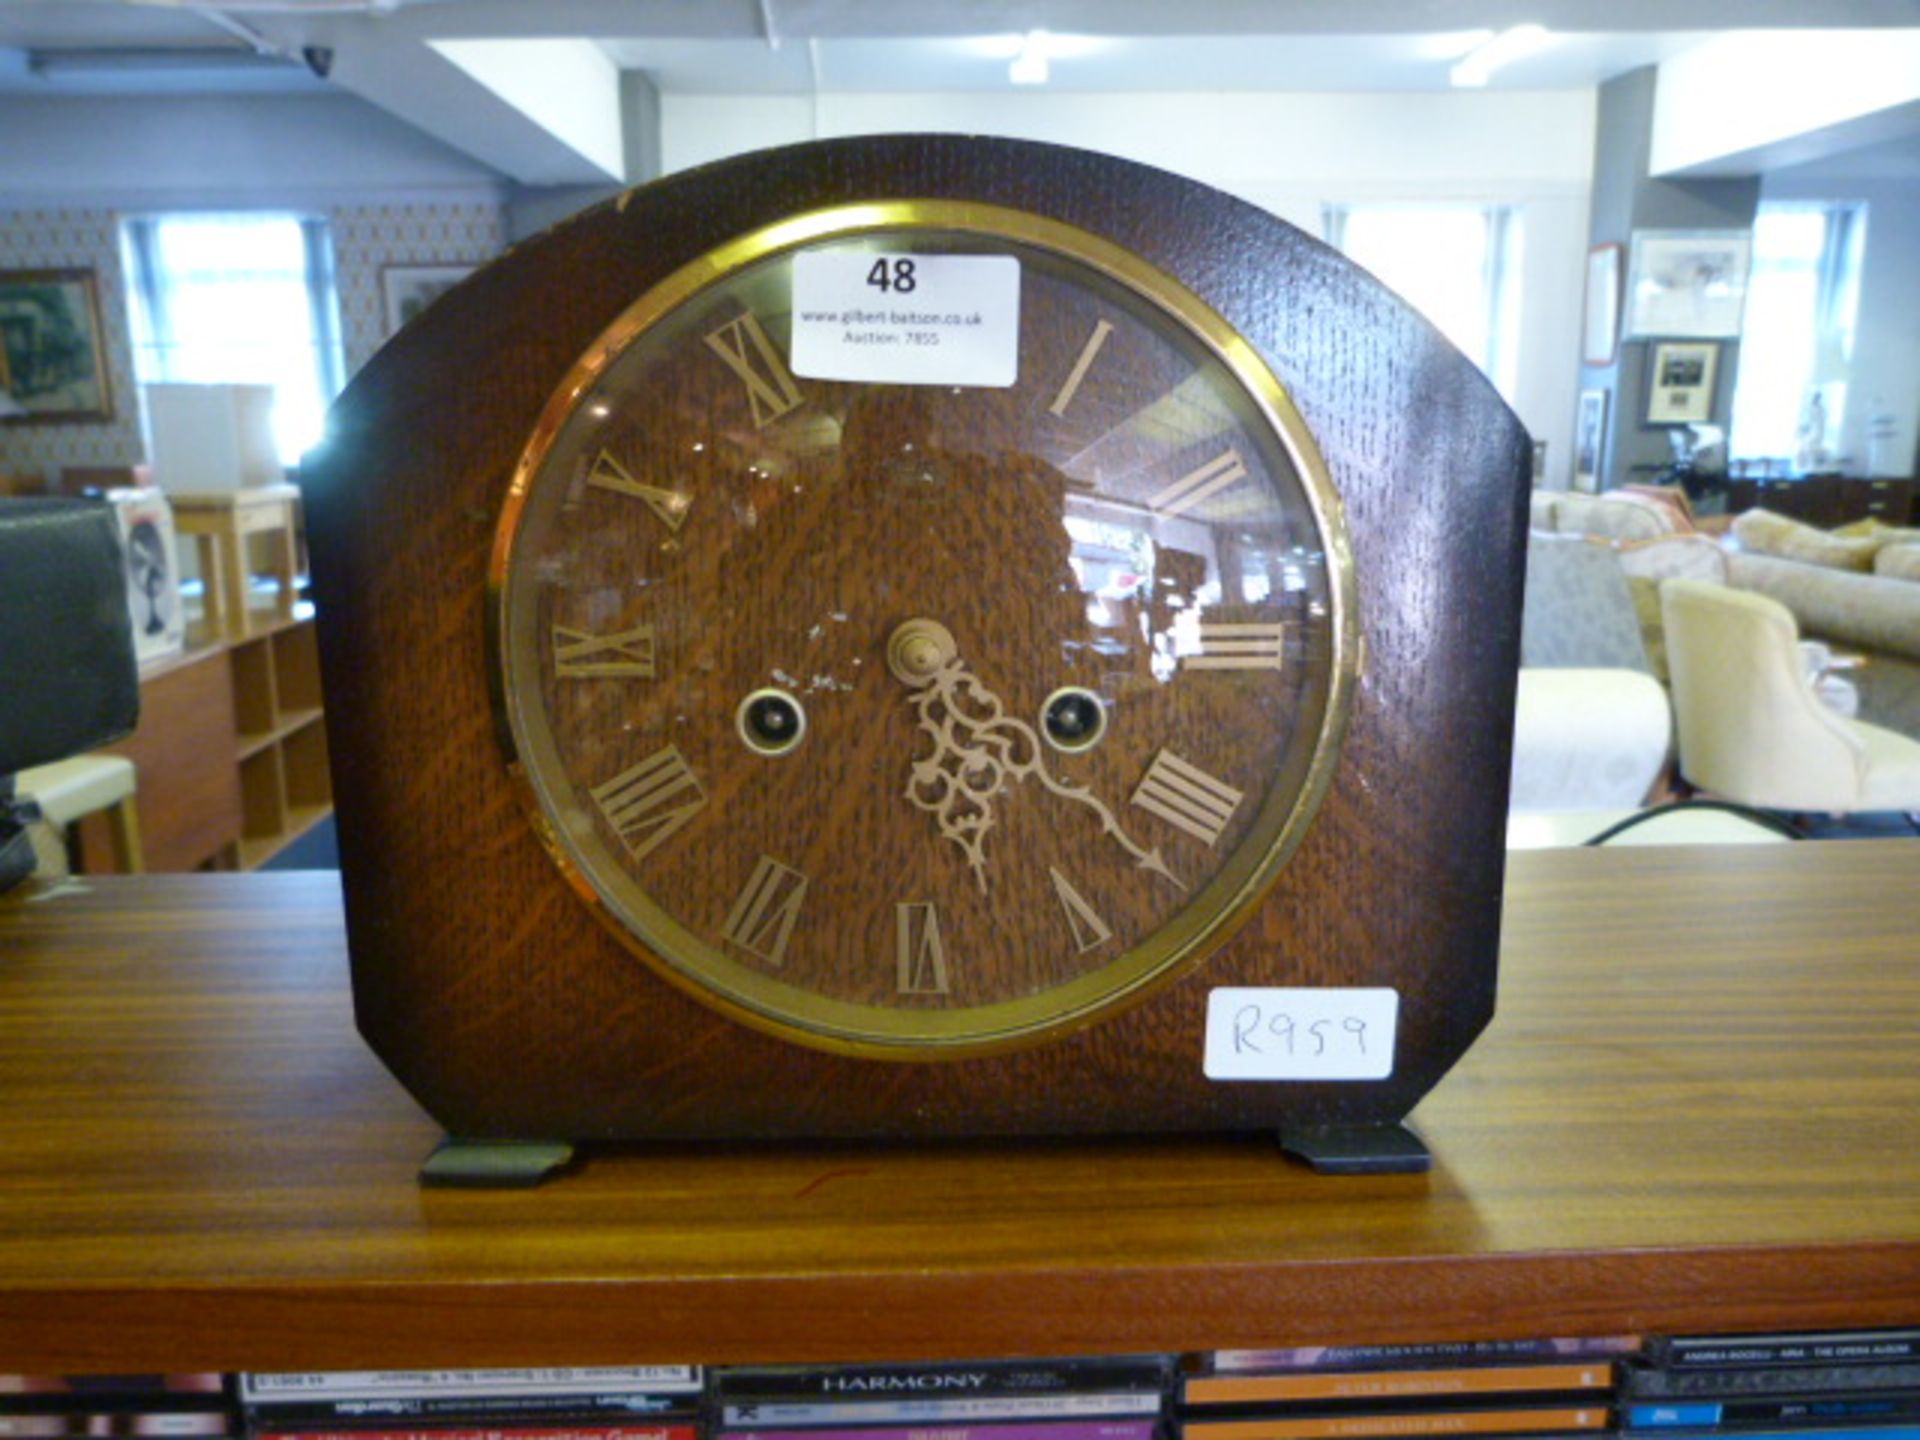 Oak Cased Mantel Clock